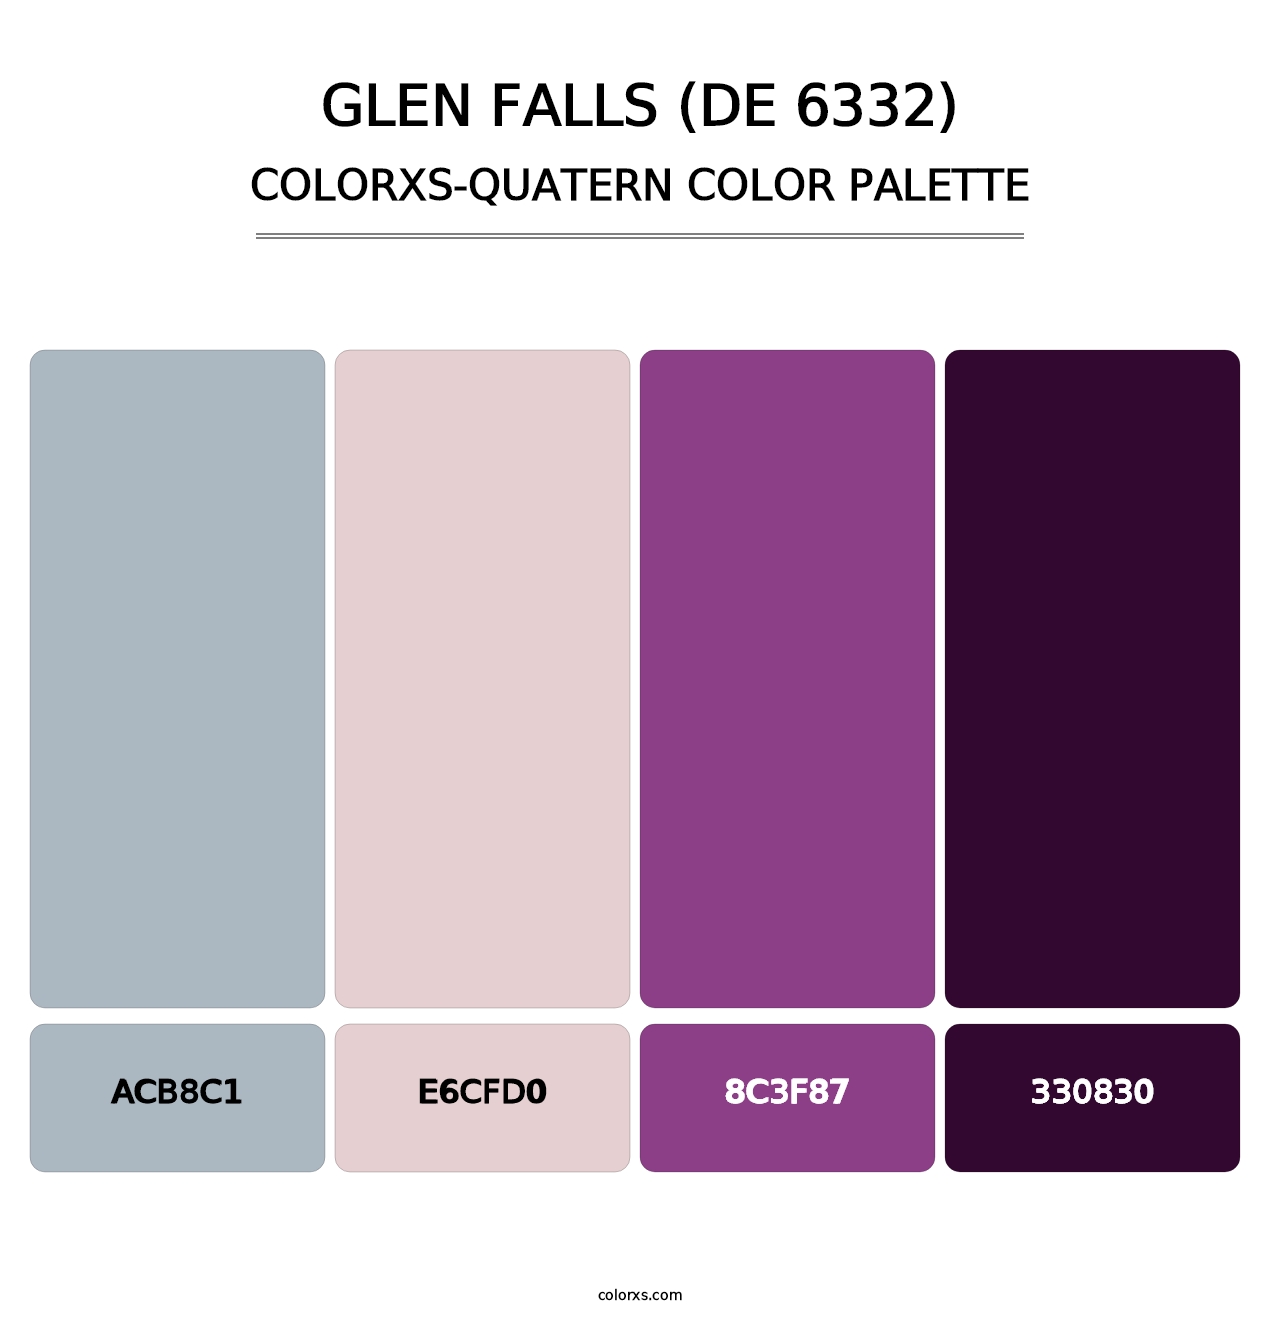 Glen Falls (DE 6332) - Colorxs Quatern Palette